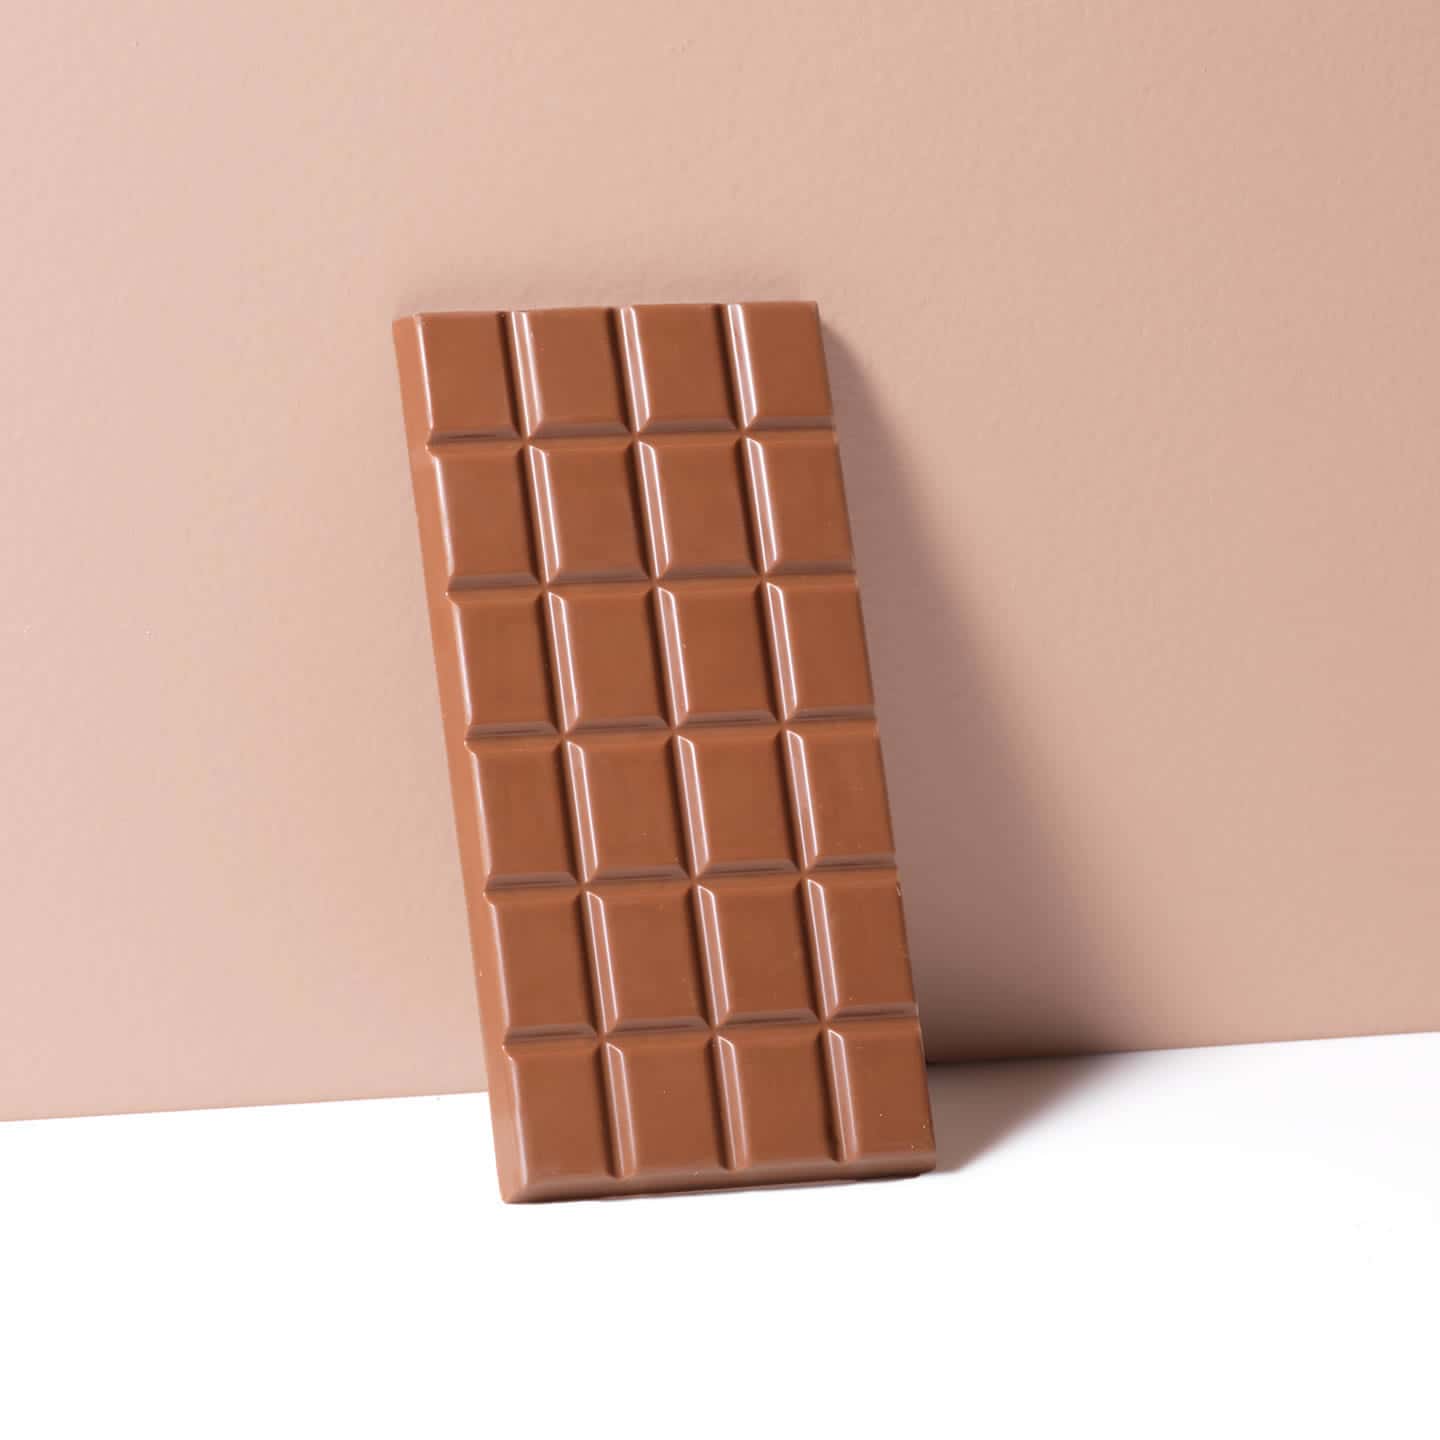 Tablette Chocolat Lait 36% 100g